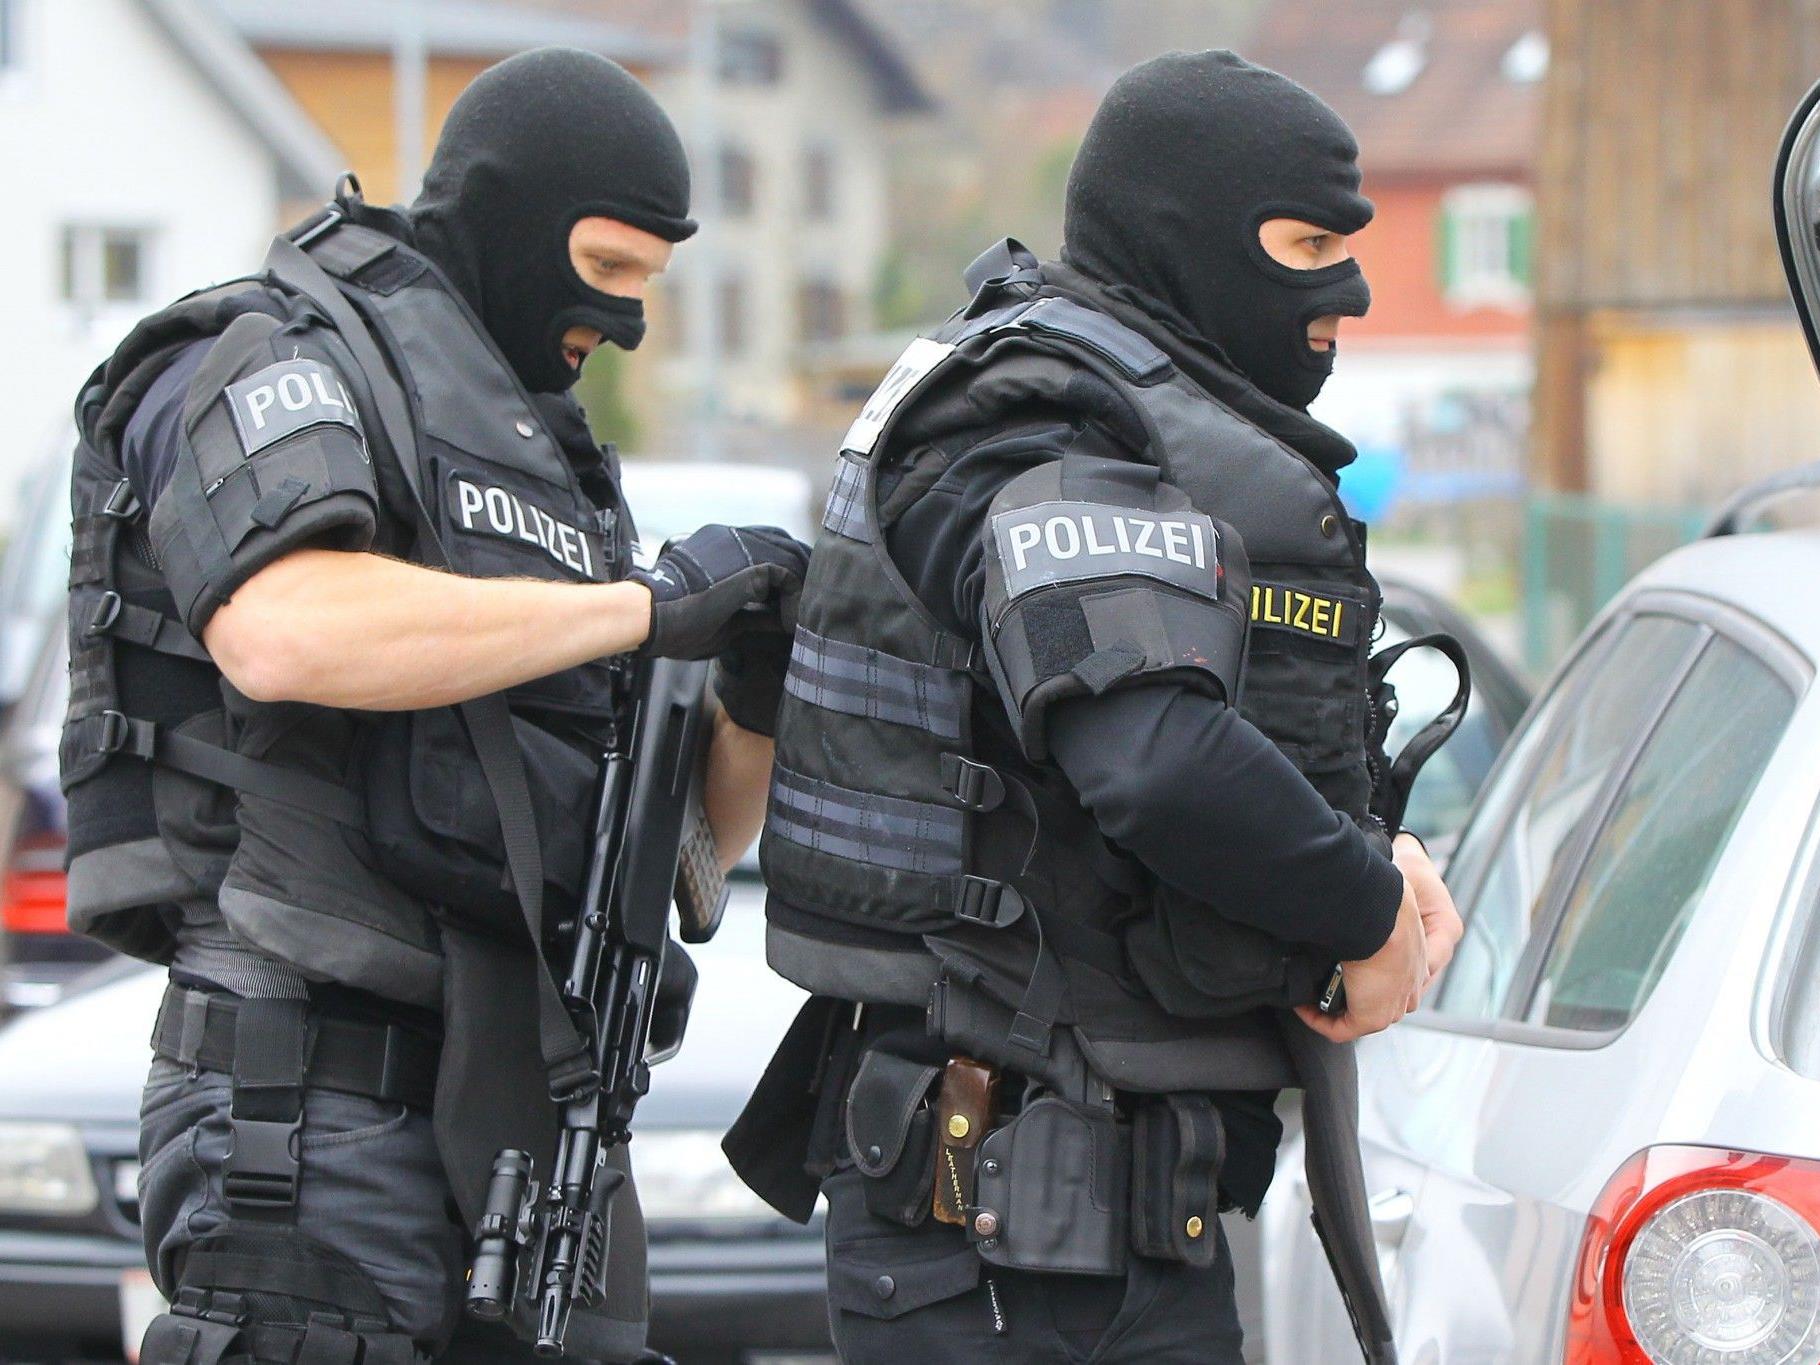 Cobra-Einsatz in Bregenz: Sichergestellt wurde eine Luftdruckwaffe, verletzt wurde niemand.